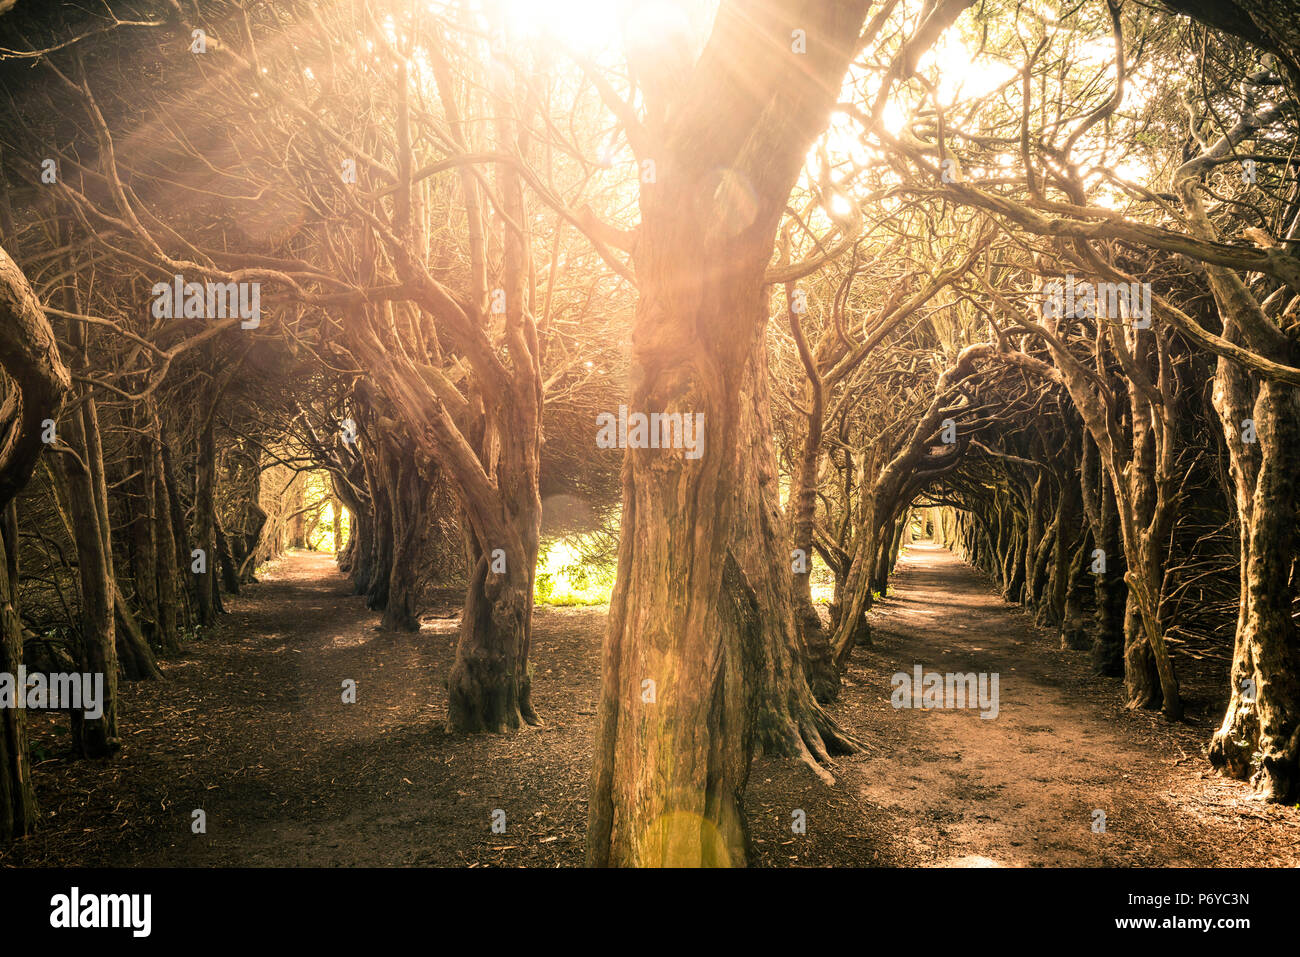 Gormanston College, County Meath, Irland, Europa. Bäume Tunnel im Garten der Hochschule. Stockfoto